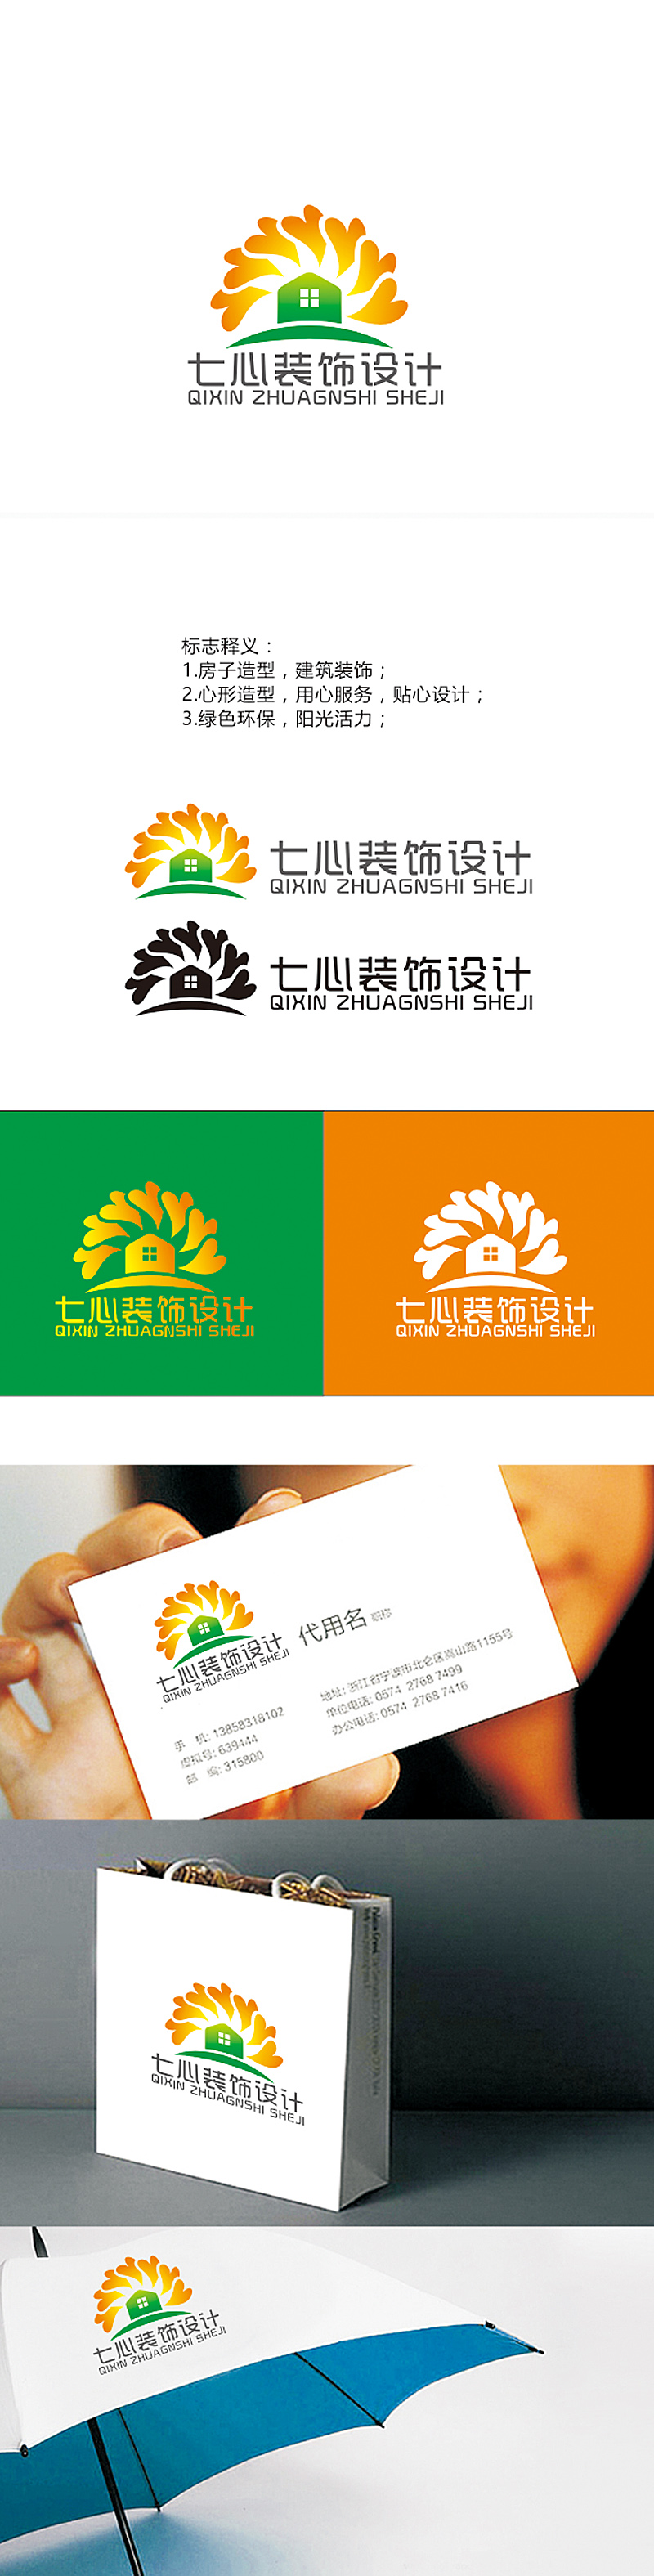 赵鹏的昆明七心装饰设计有限公司logo设计